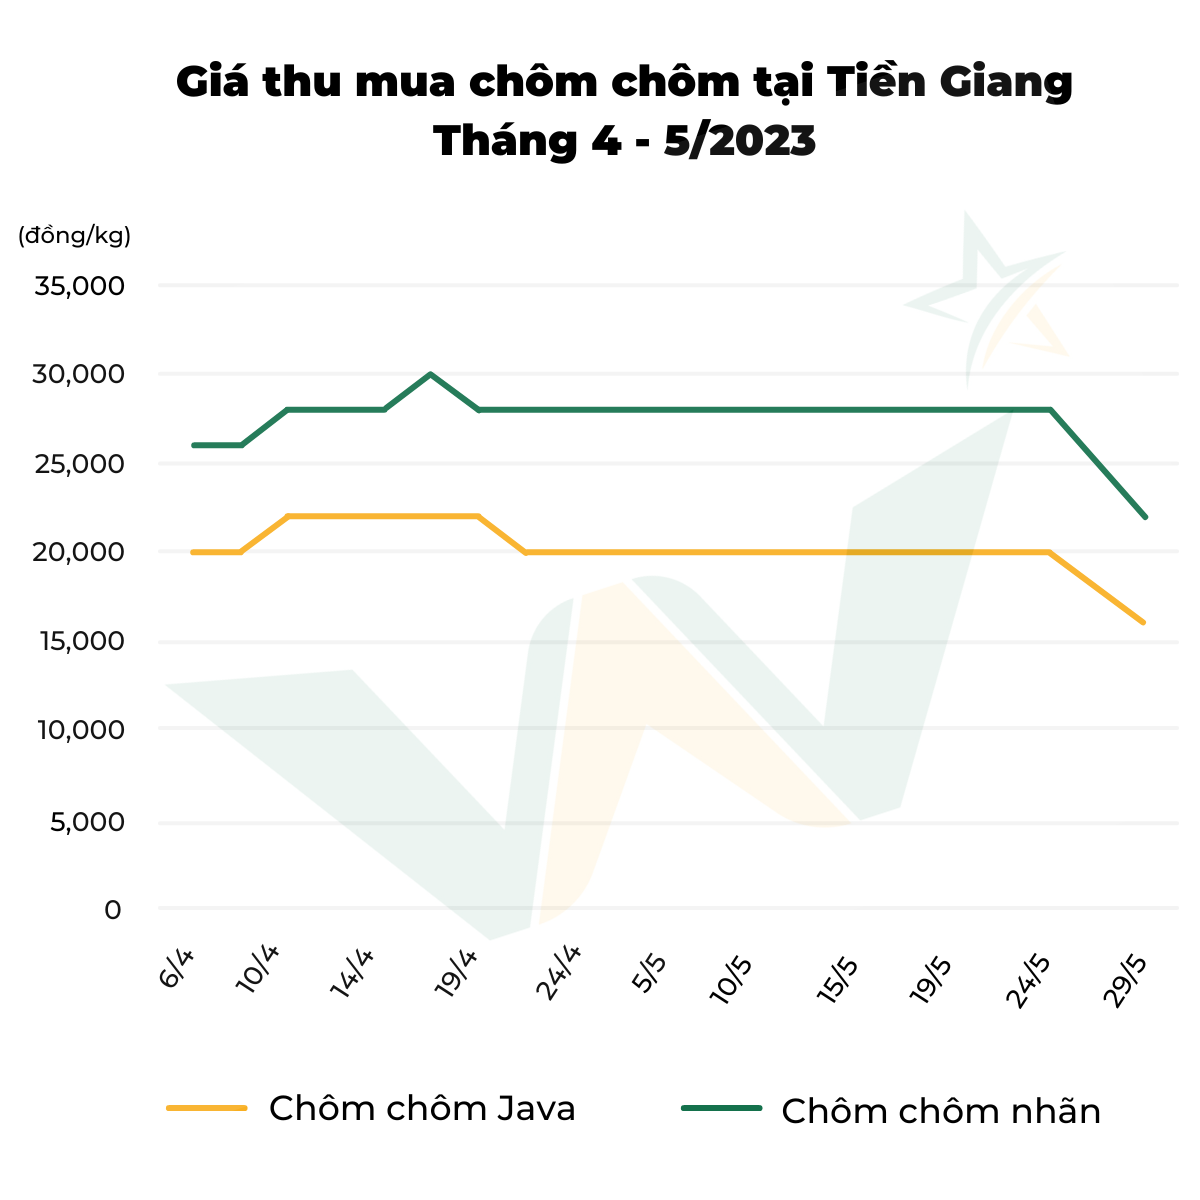 biểu đồ giá thu mua chôm chôm tại Tiền Giang tháng 4-5/2023